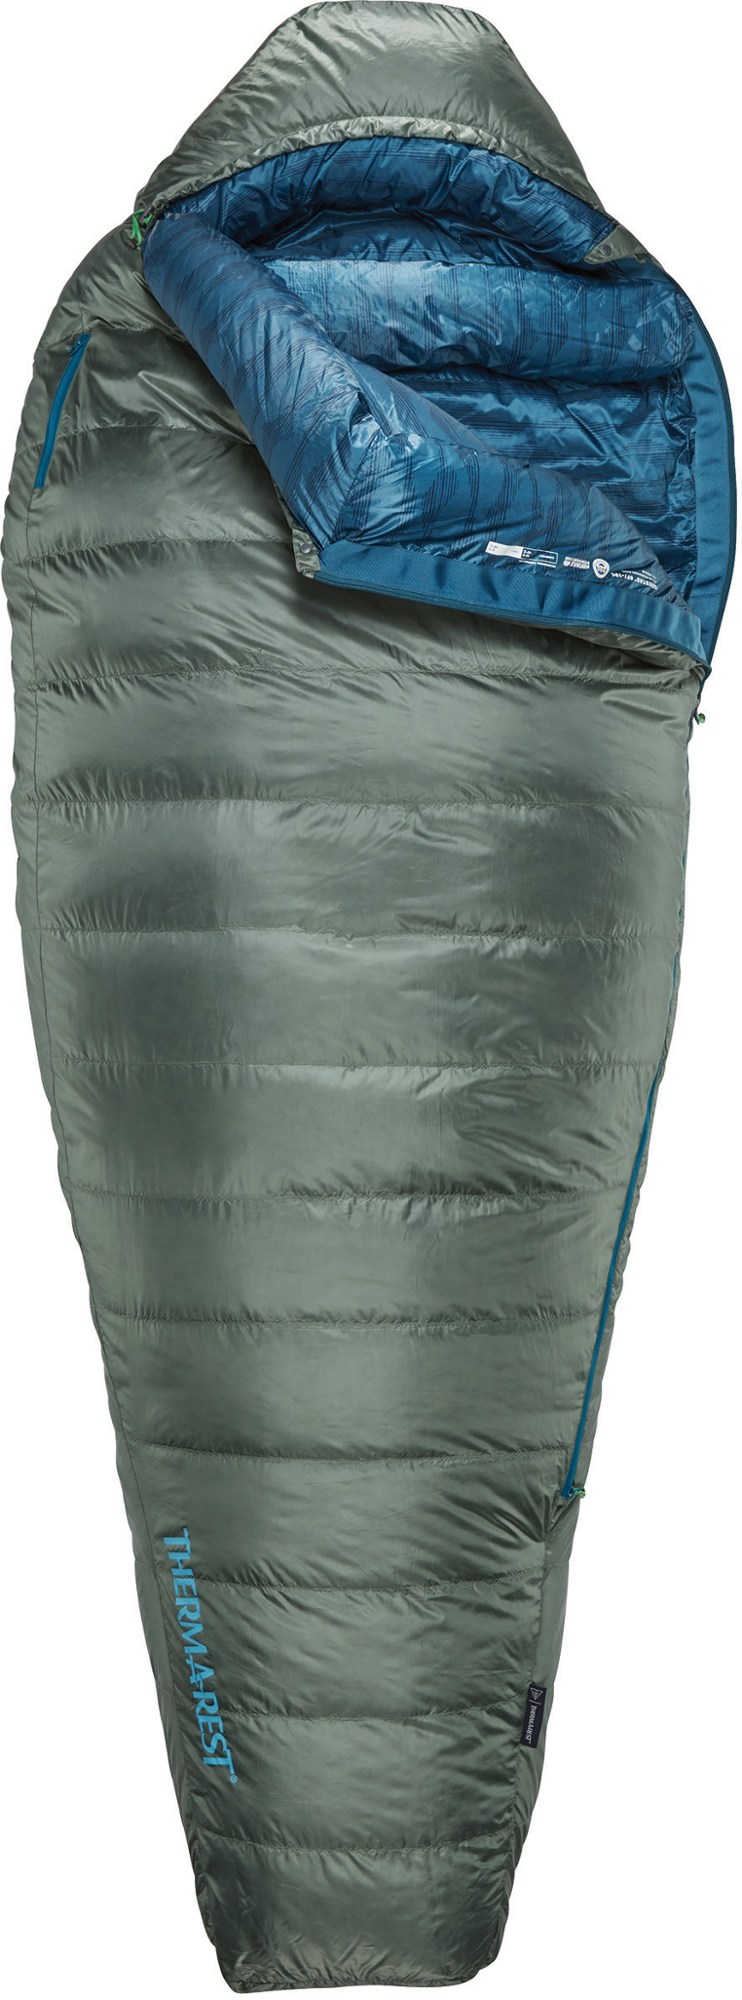 Спальный мешок Questar 0 Therm-a-Rest, зеленый фотографии